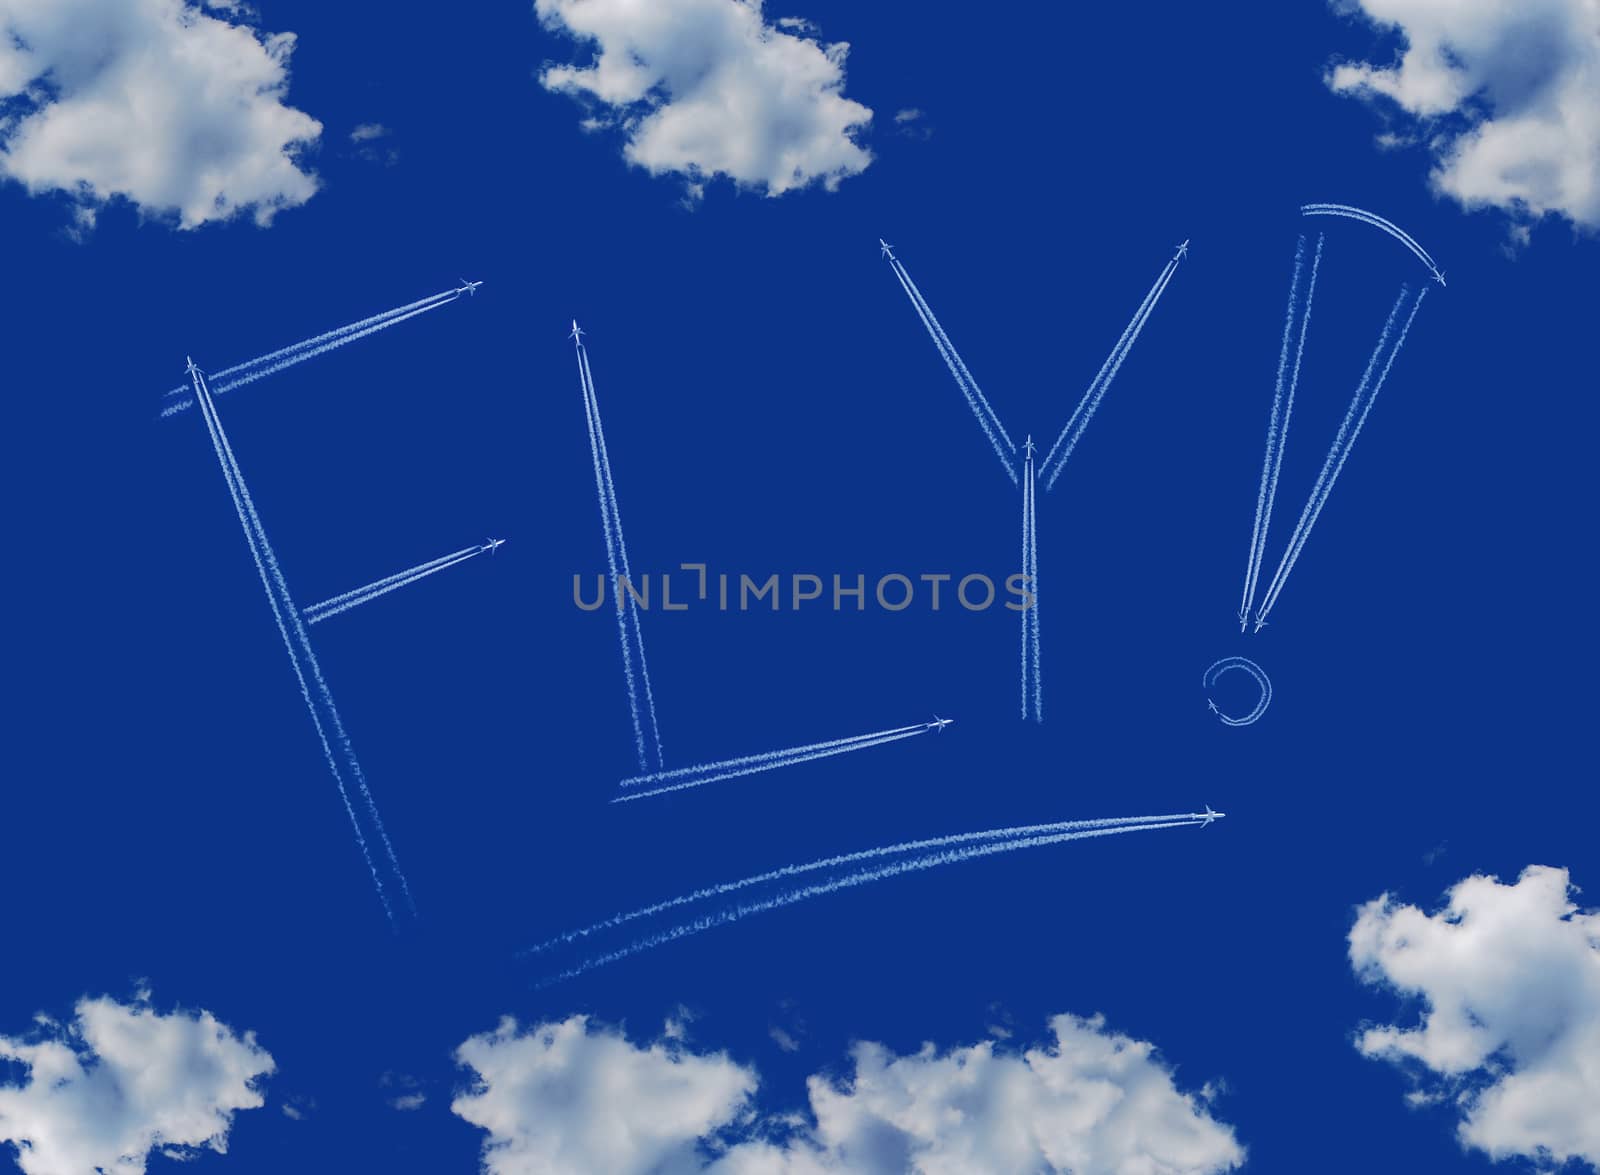 
Fly inscription on a blue sky by studio023